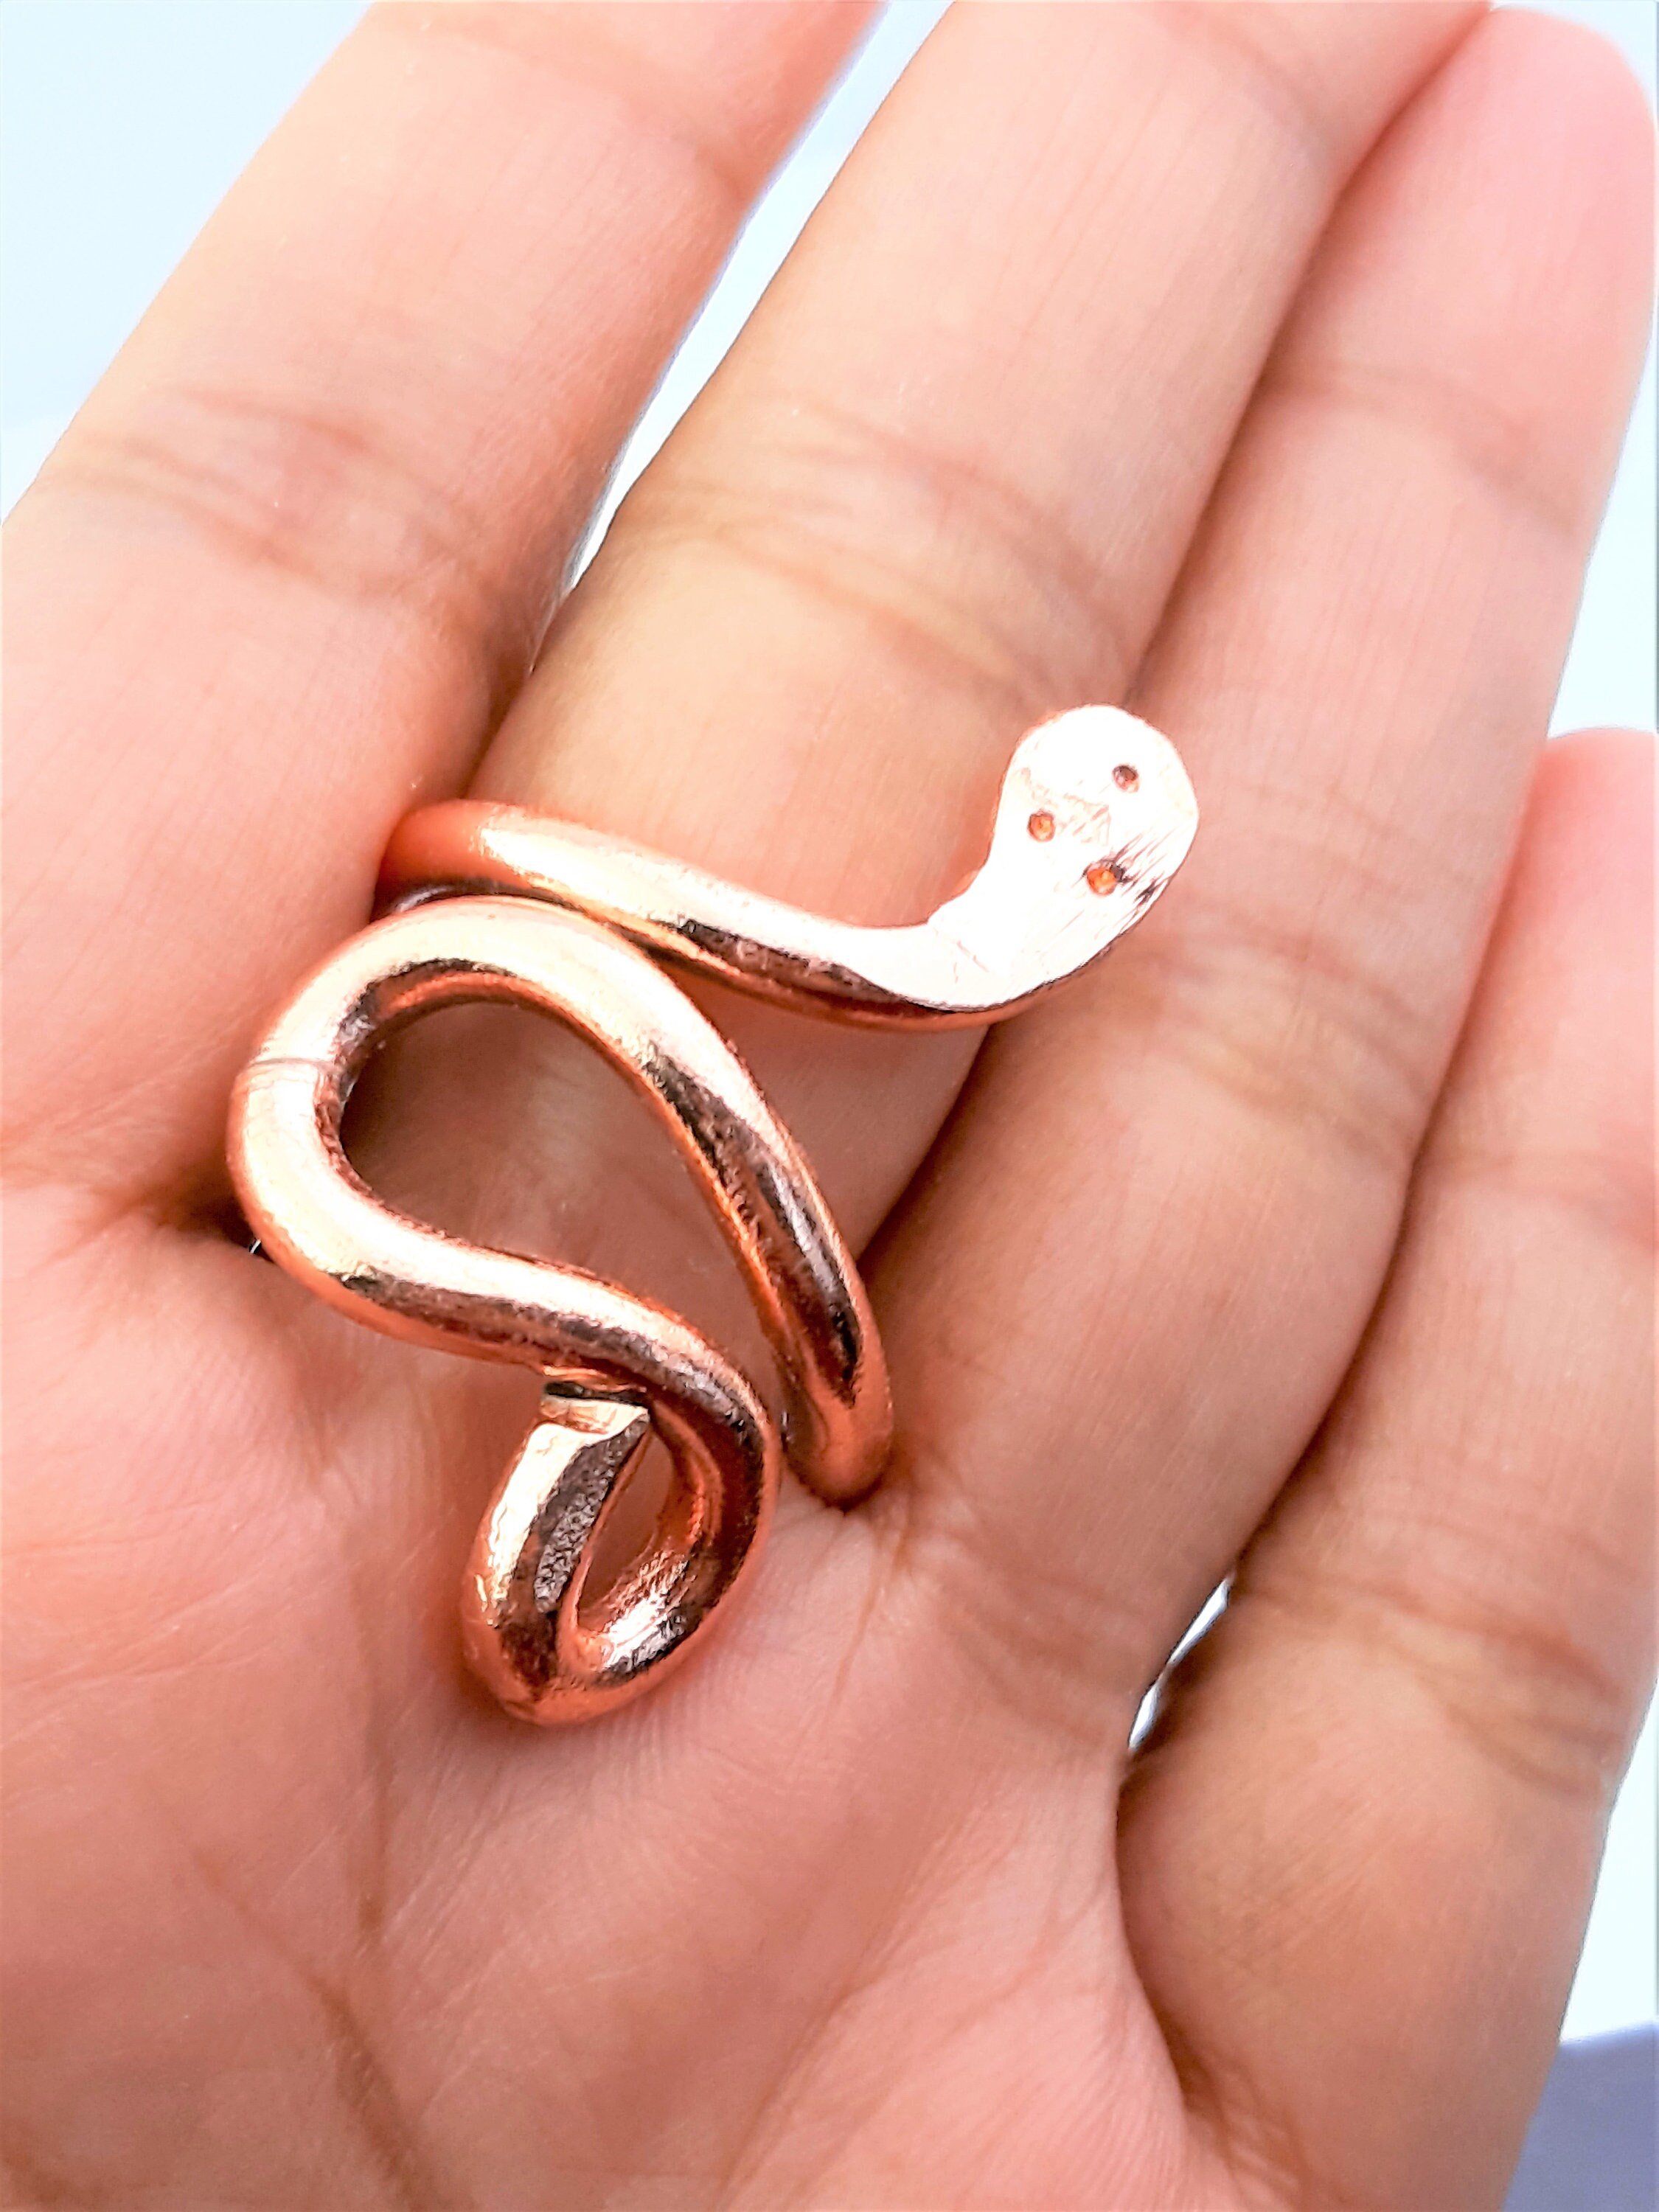 Copper Snake Finger Ring Challa Adjustable Health For Kaal Sarp Dosh Benefit  Yog | eBay